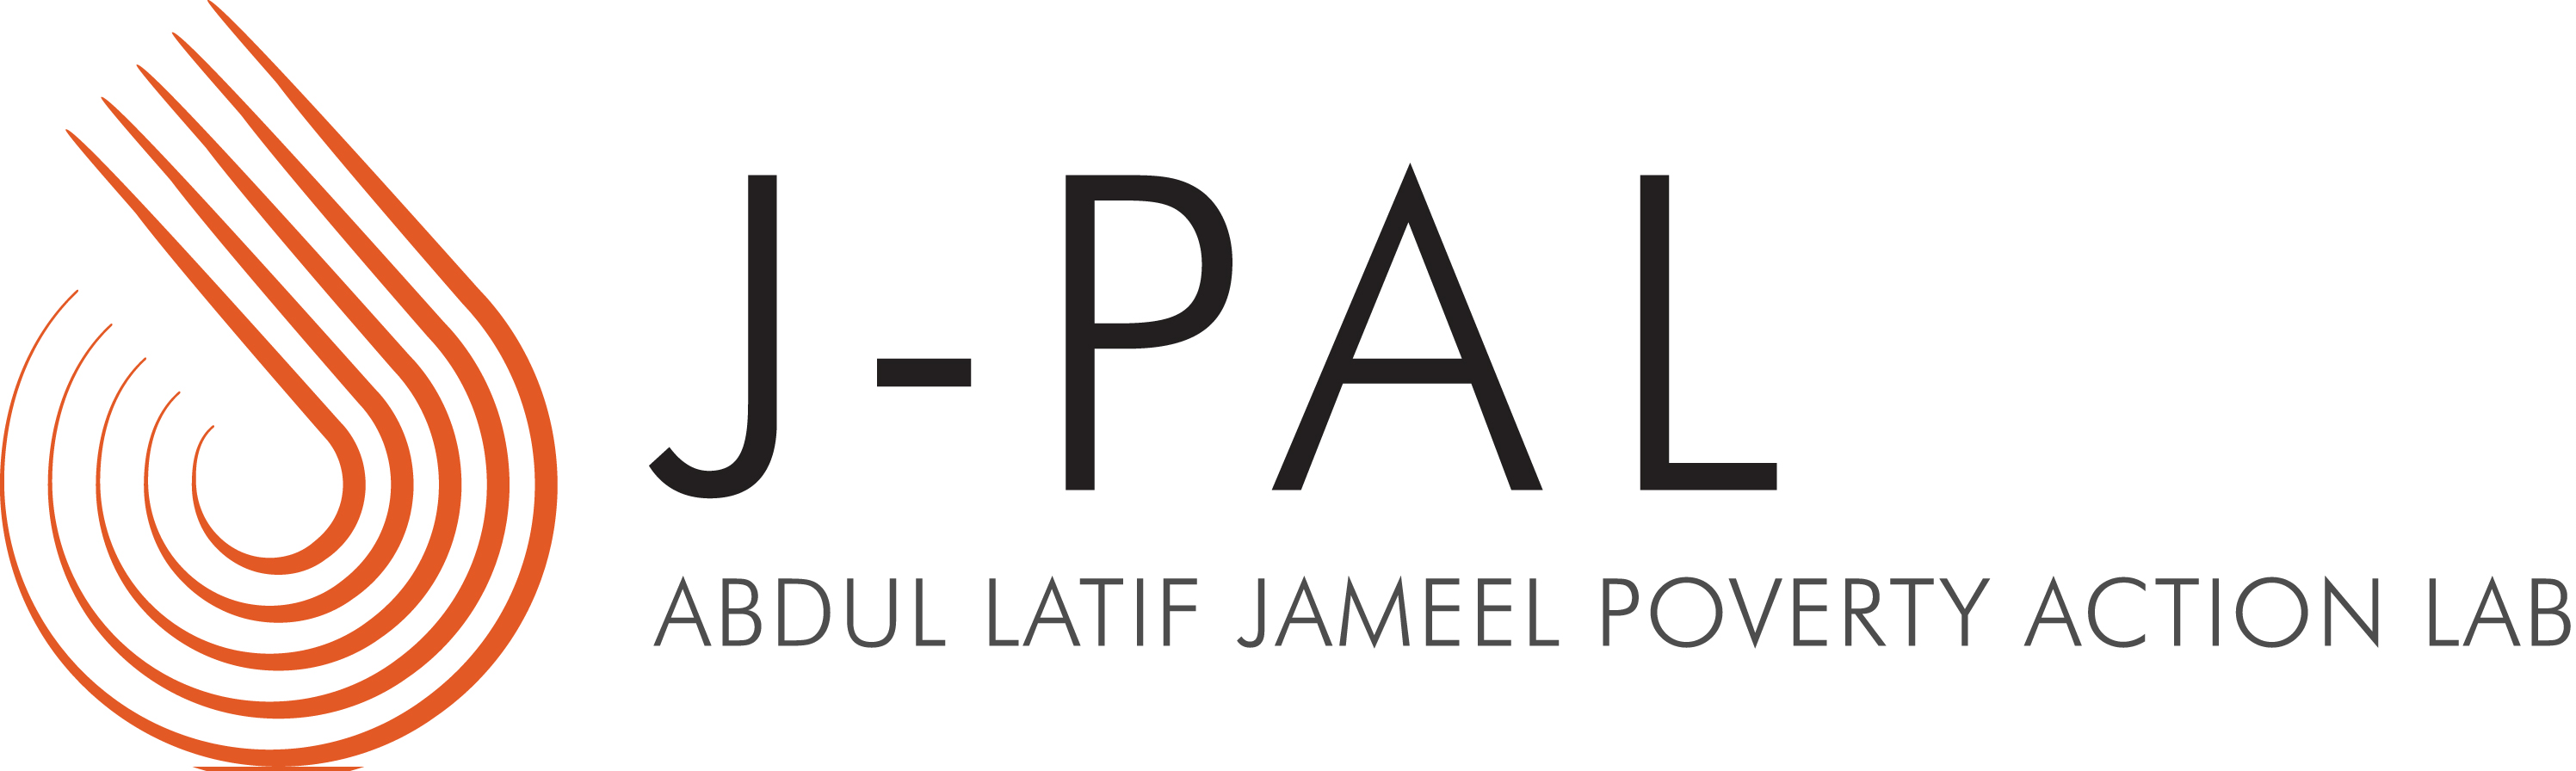 Logotipo J-PAL